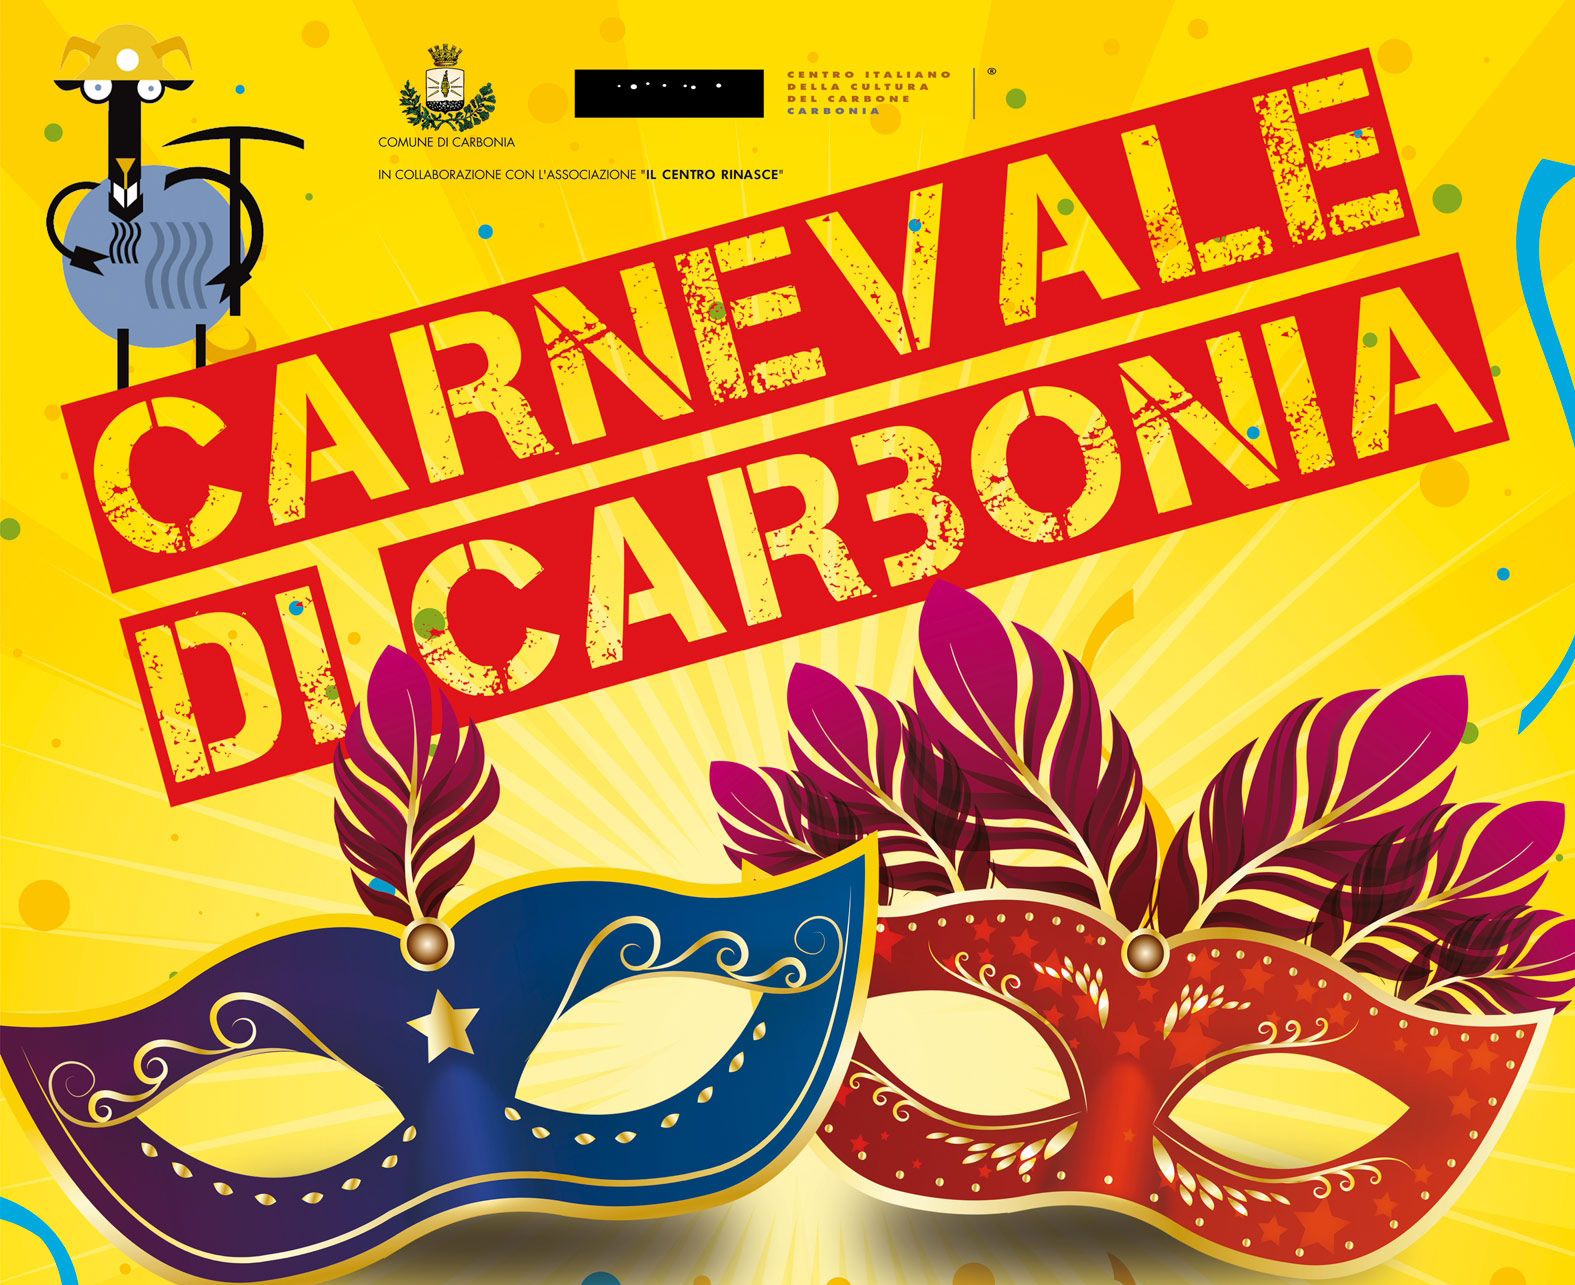 Un immagine della locandina ufficiale del Carnevale 2017 di Carbonia.